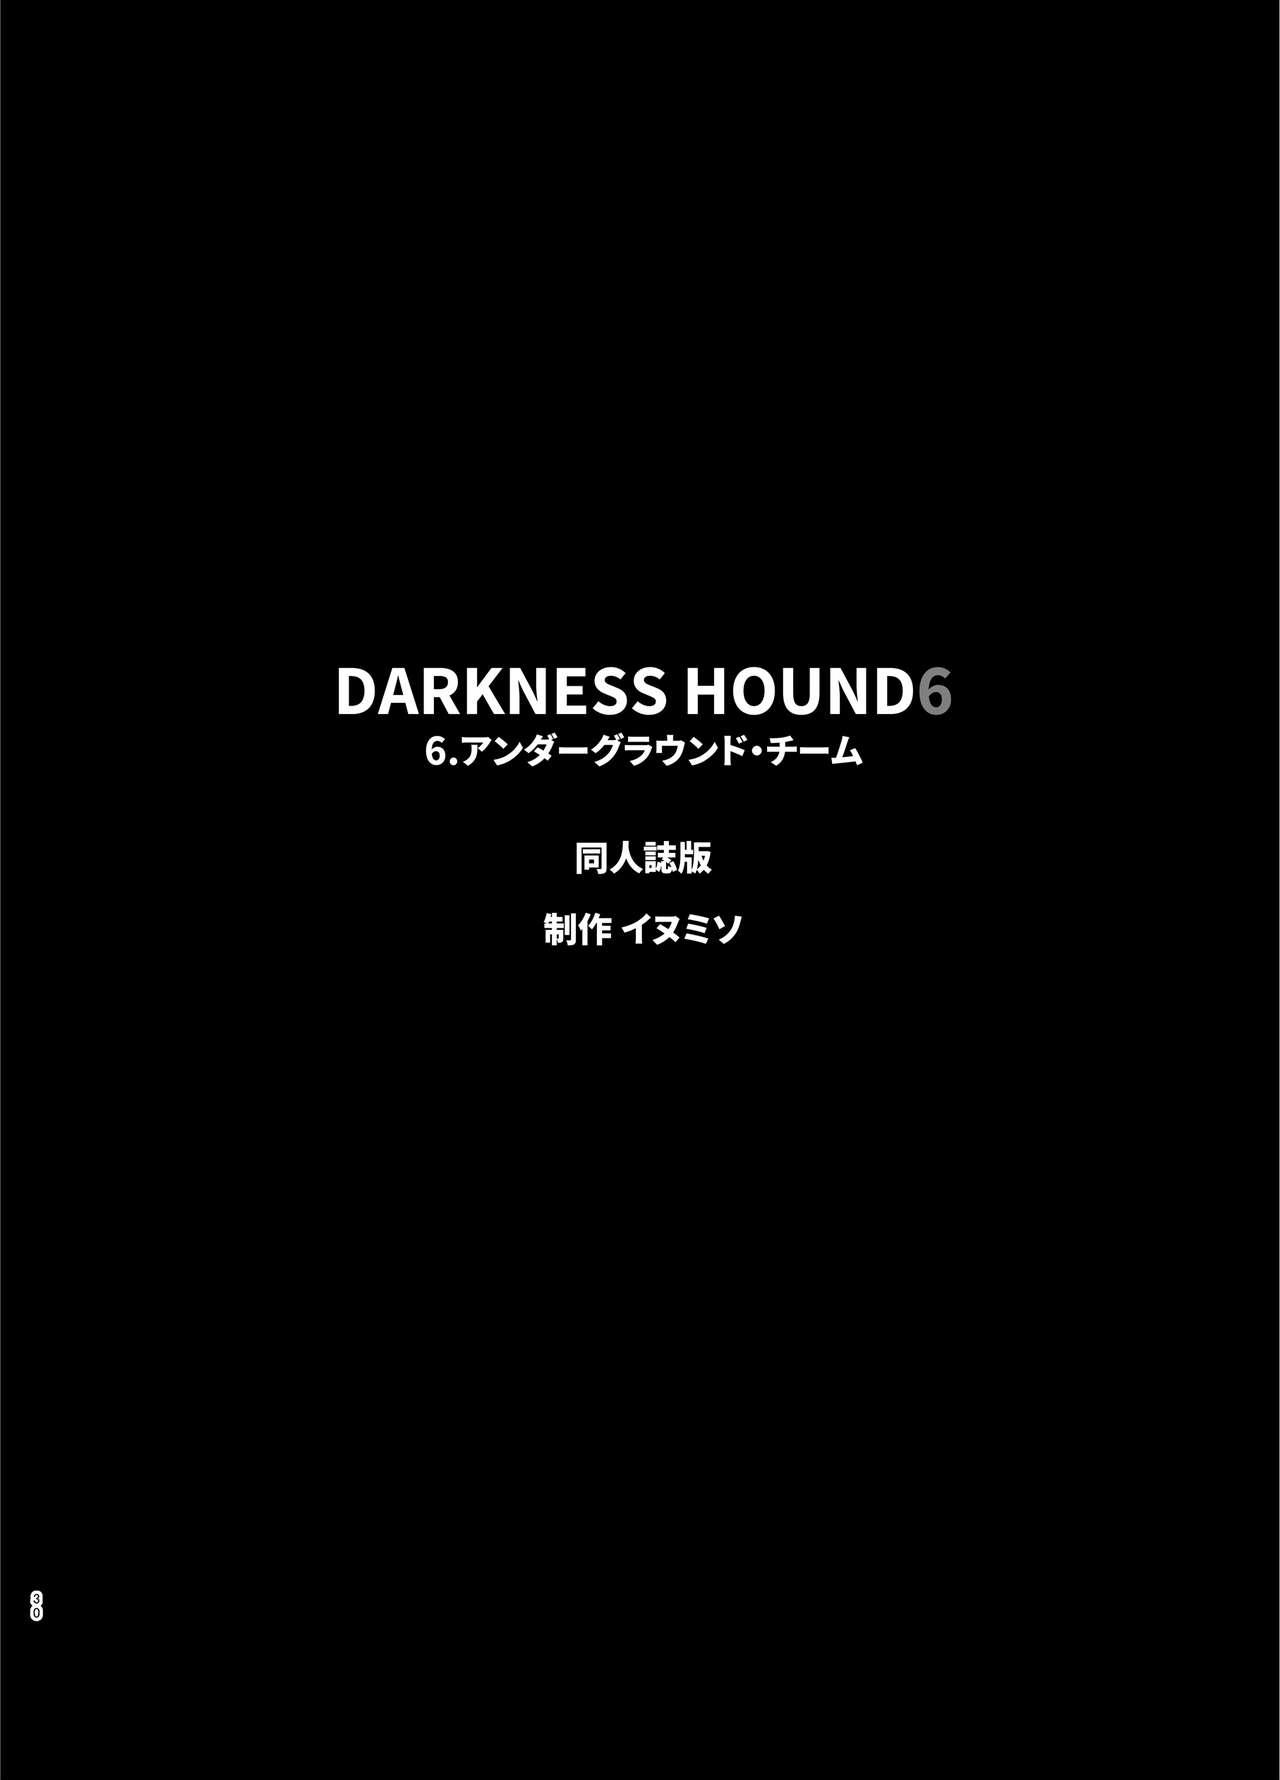 Darkness Hound 6 29